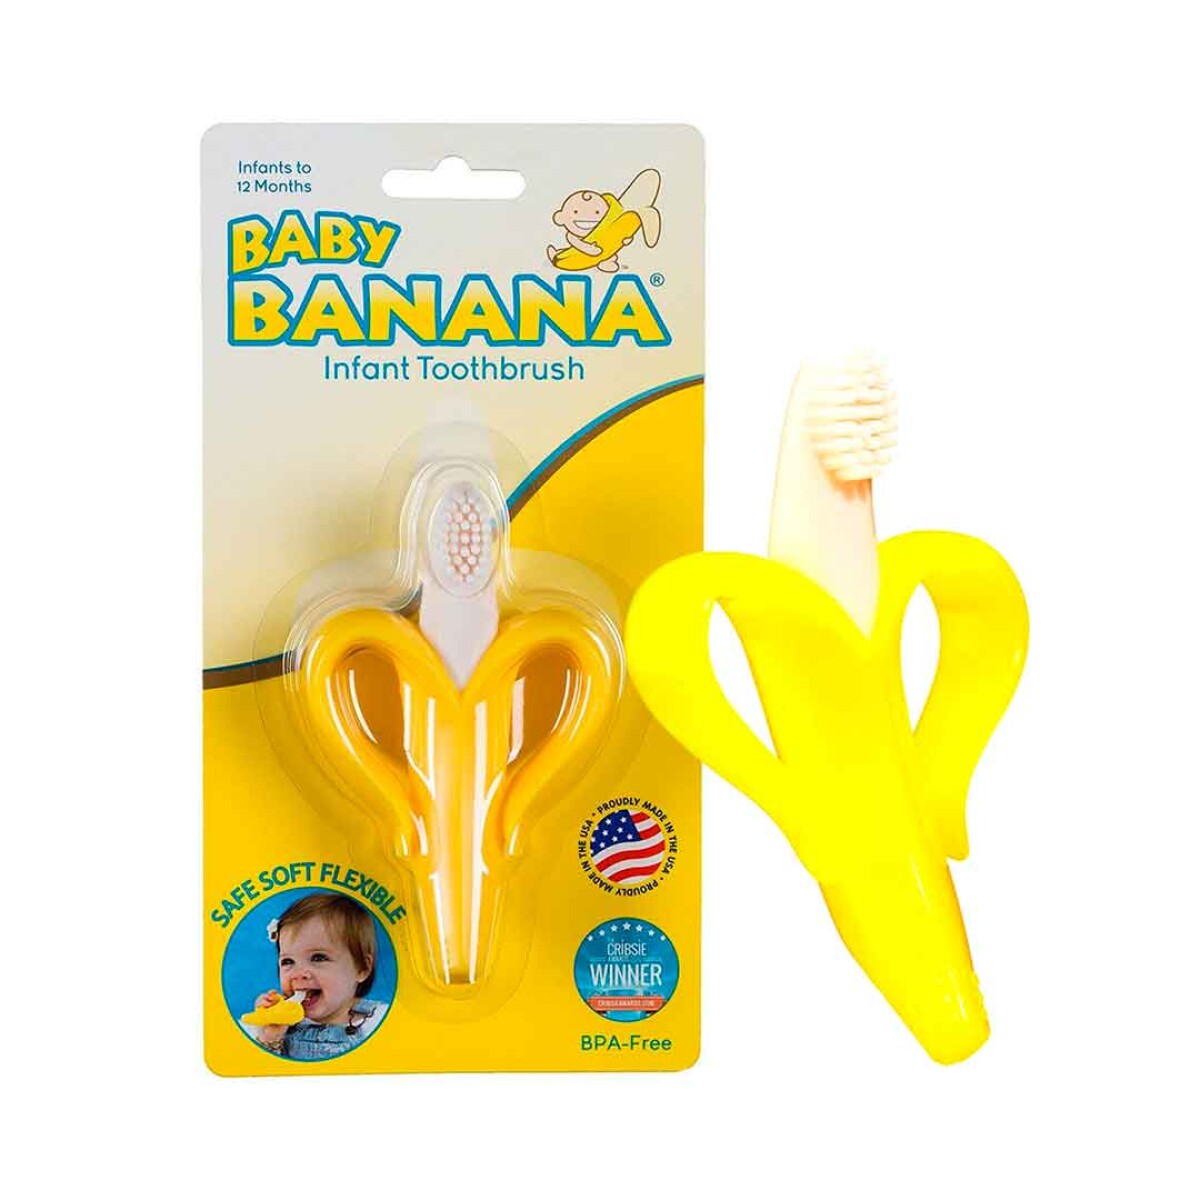 Mordillo baby banana safe soft flexible para dientes - 001 